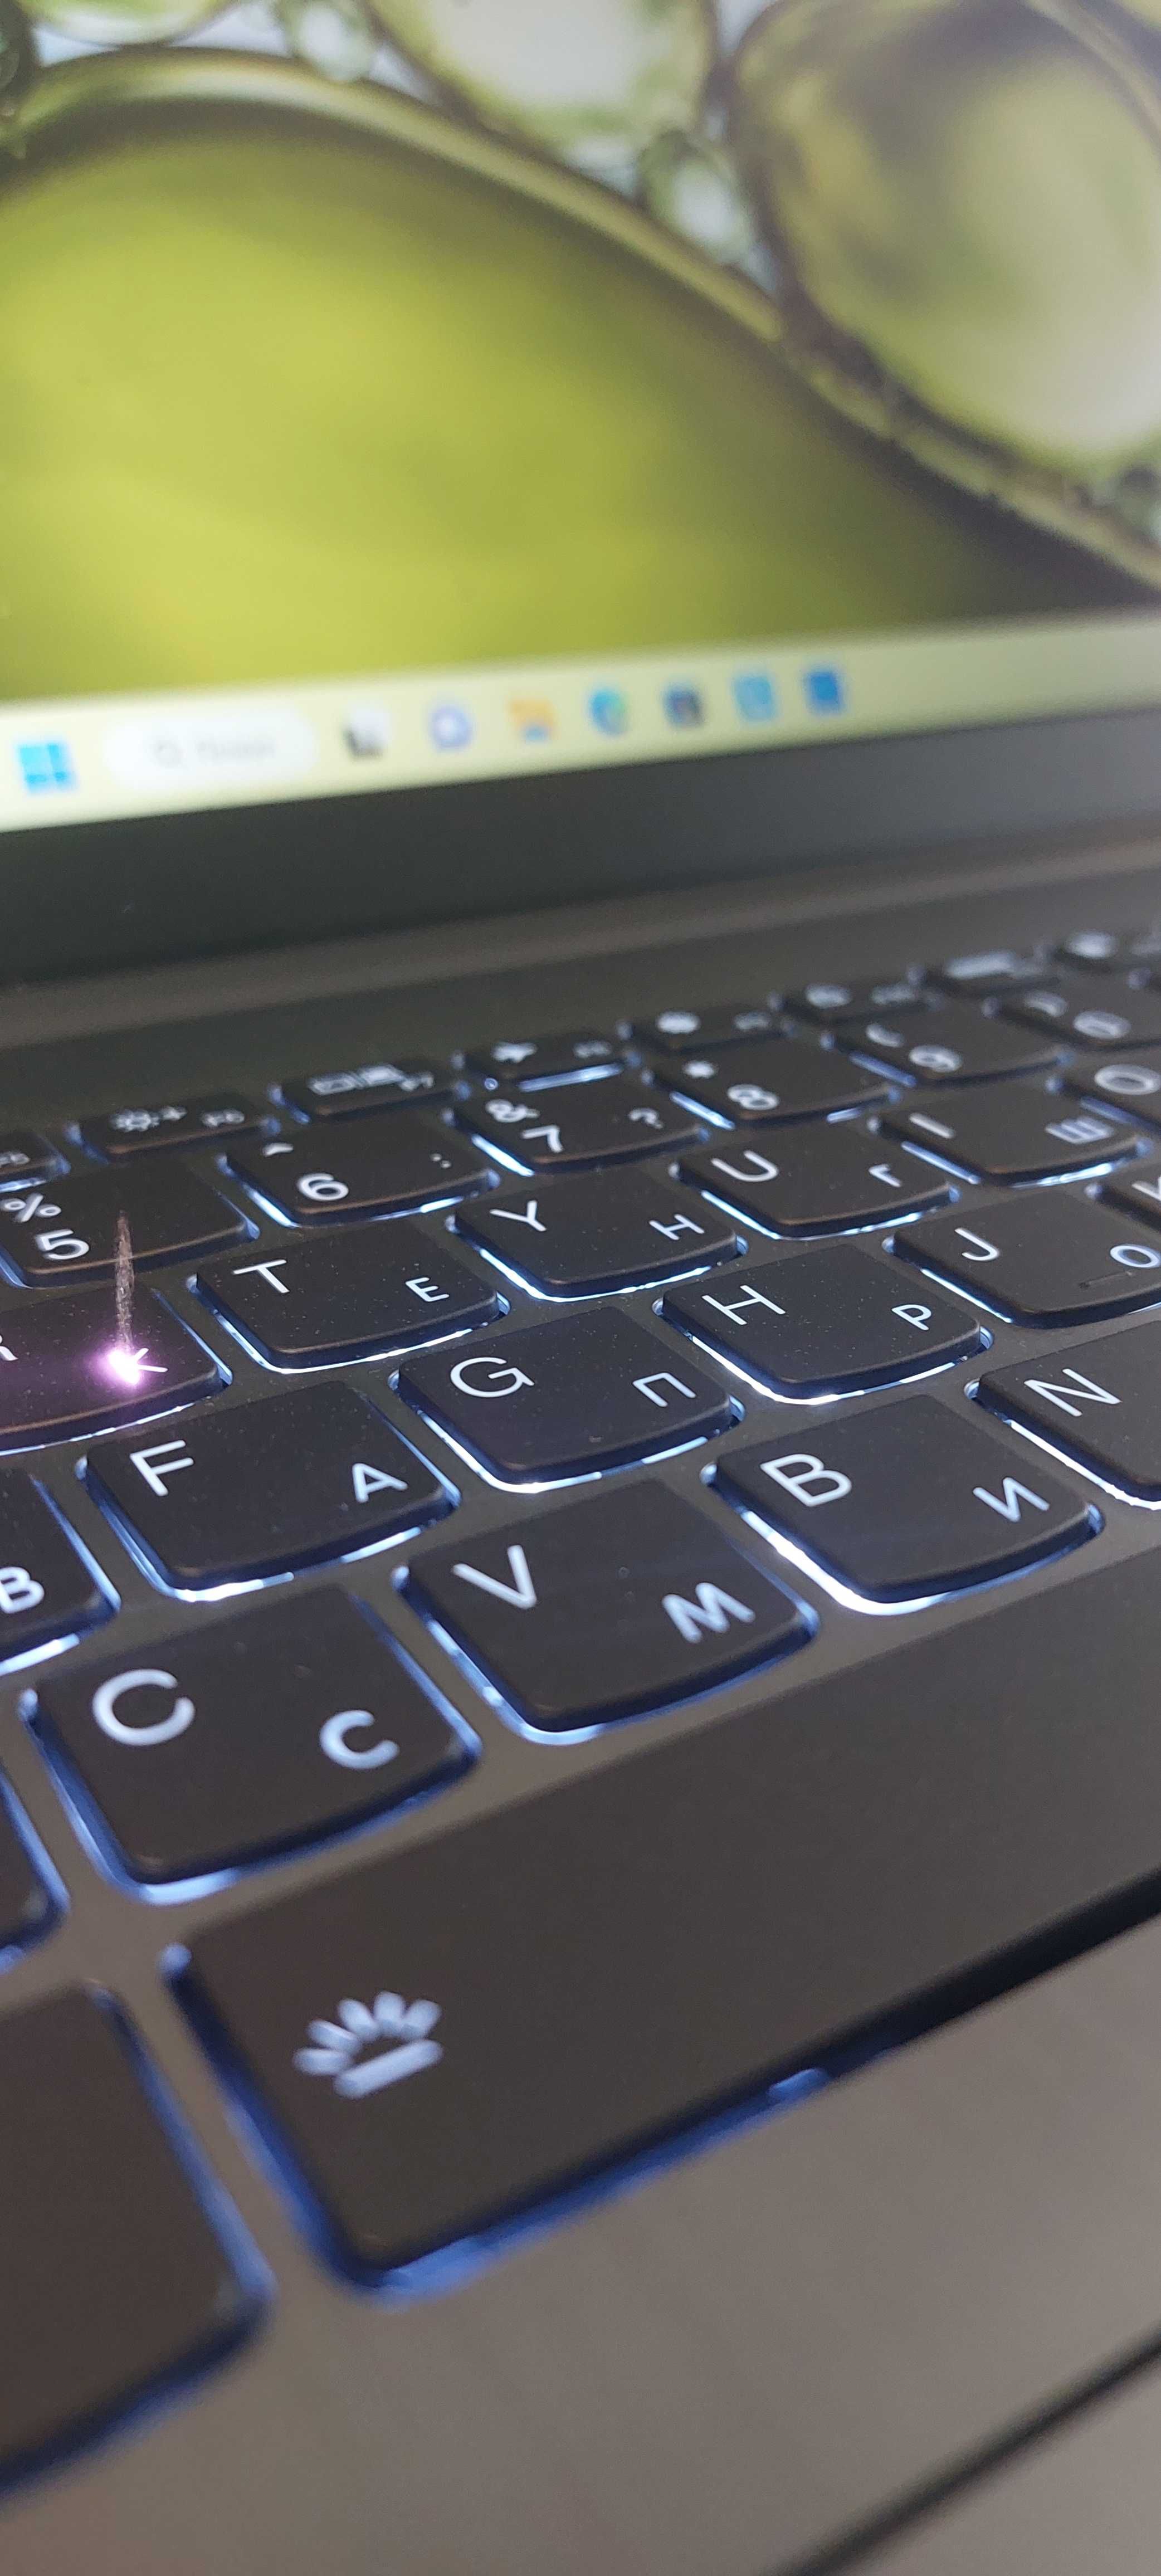 Гравировка клавиатуры Macbook оптом для магазинов